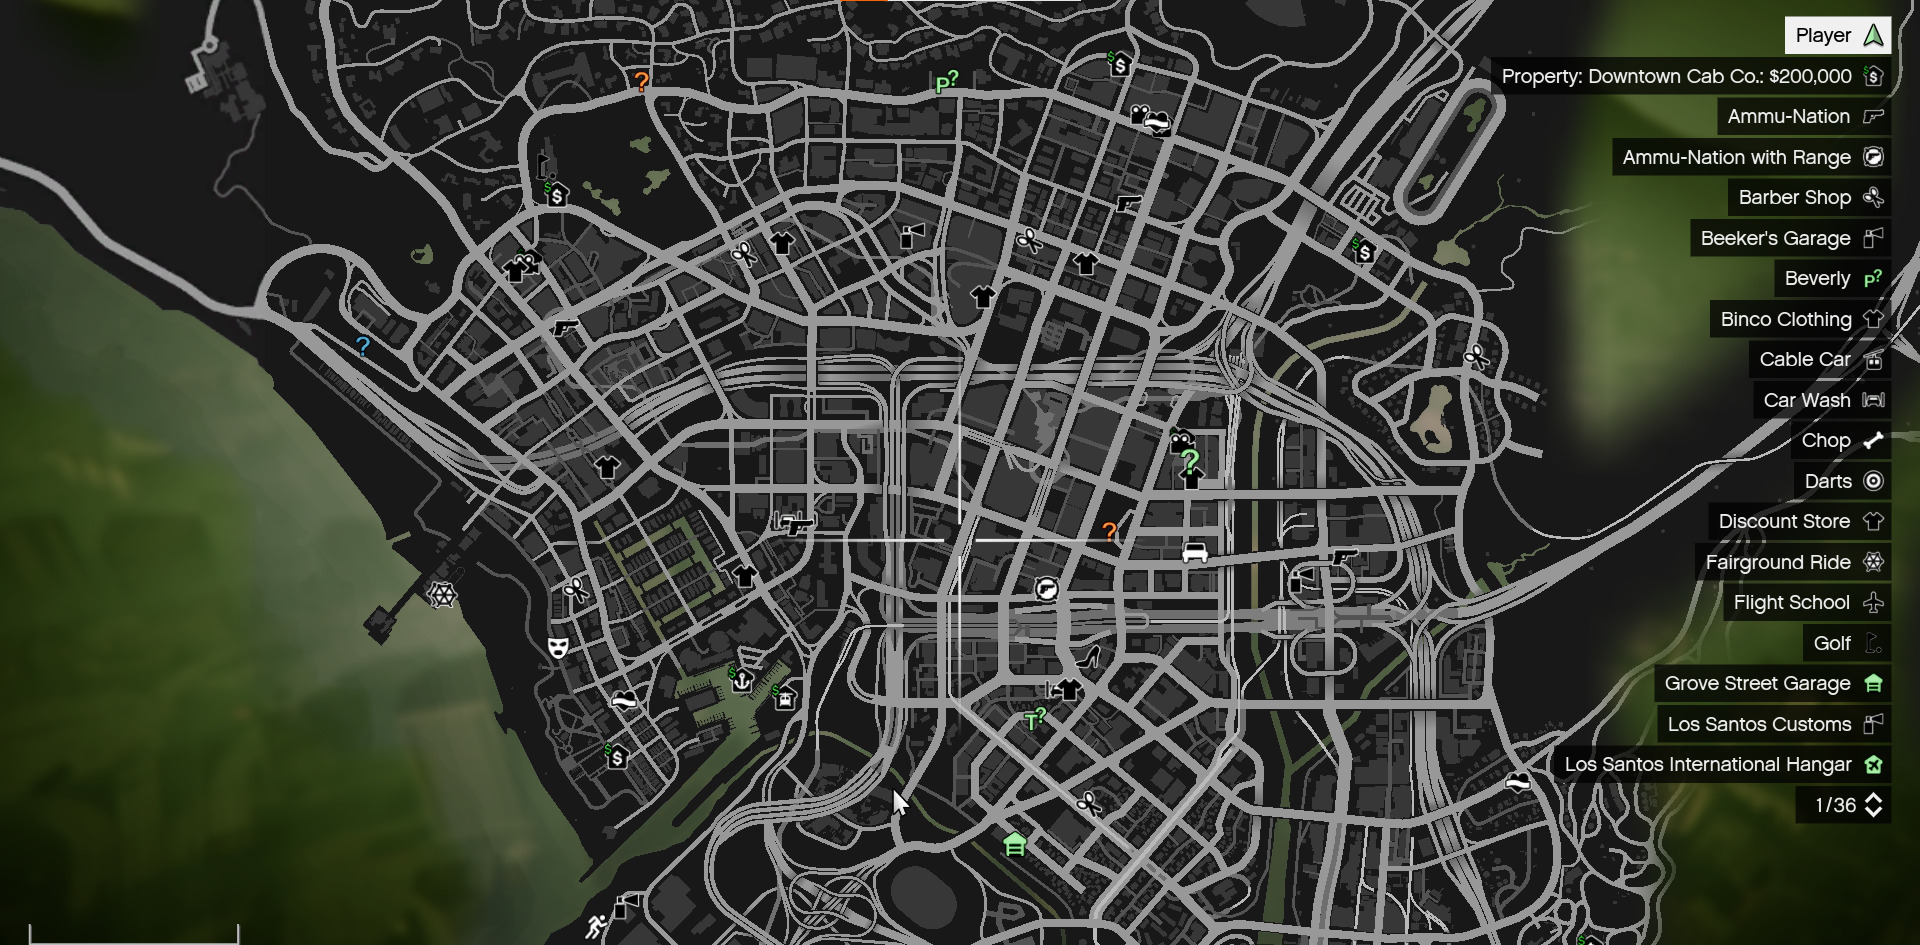 A screenshot showing the GTA 5 Map